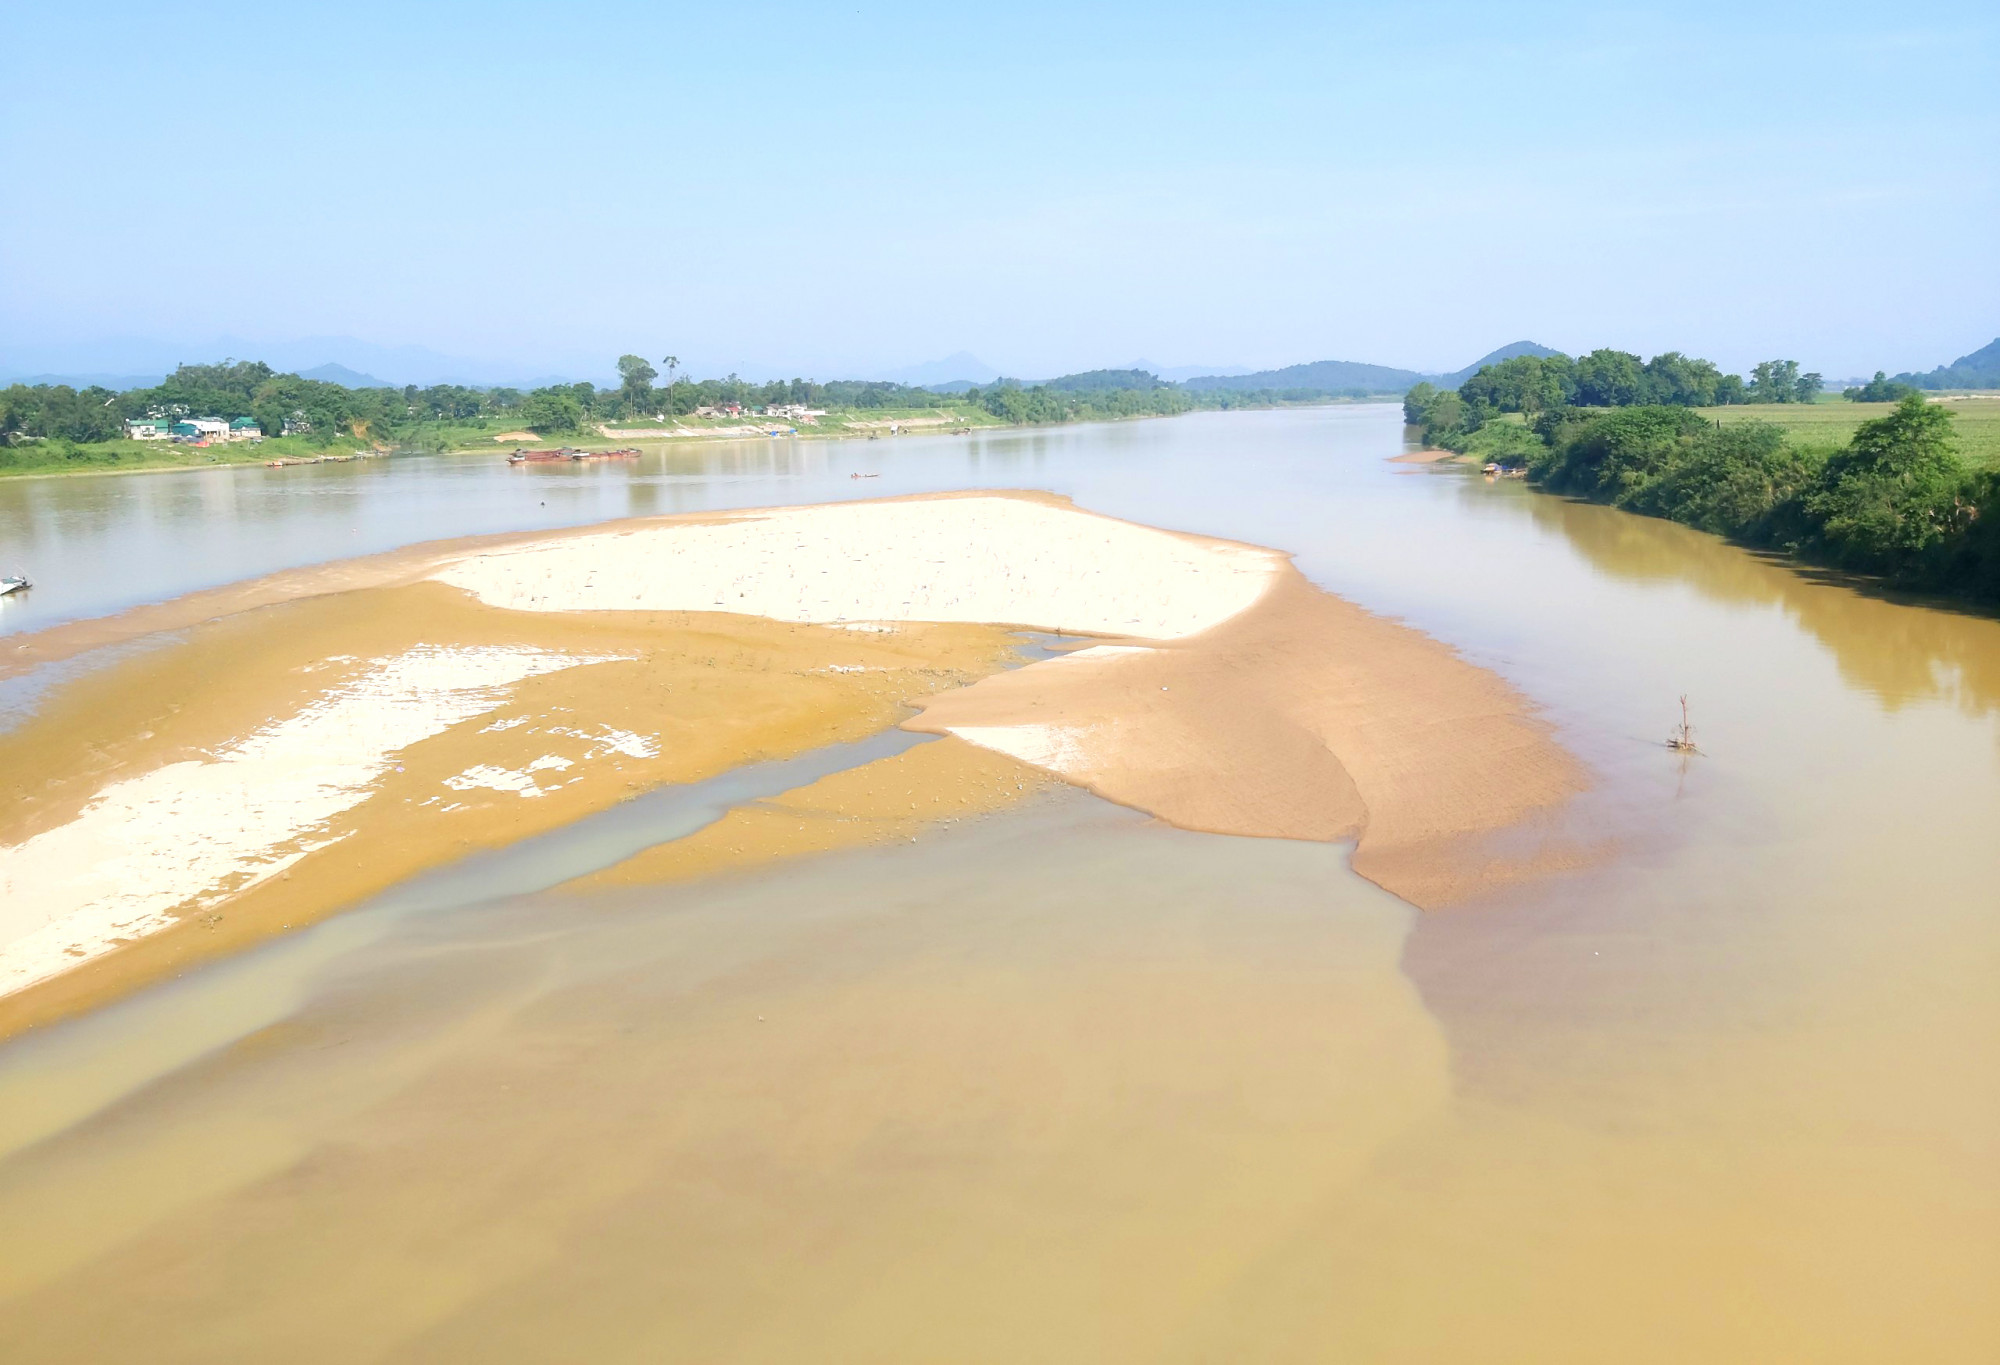 Mực nước sông Lam xuống thấp khiến việc bơm nước lên các cánh đồng gặp nhiều khó khăn - Ảnh: Phan Ngọc